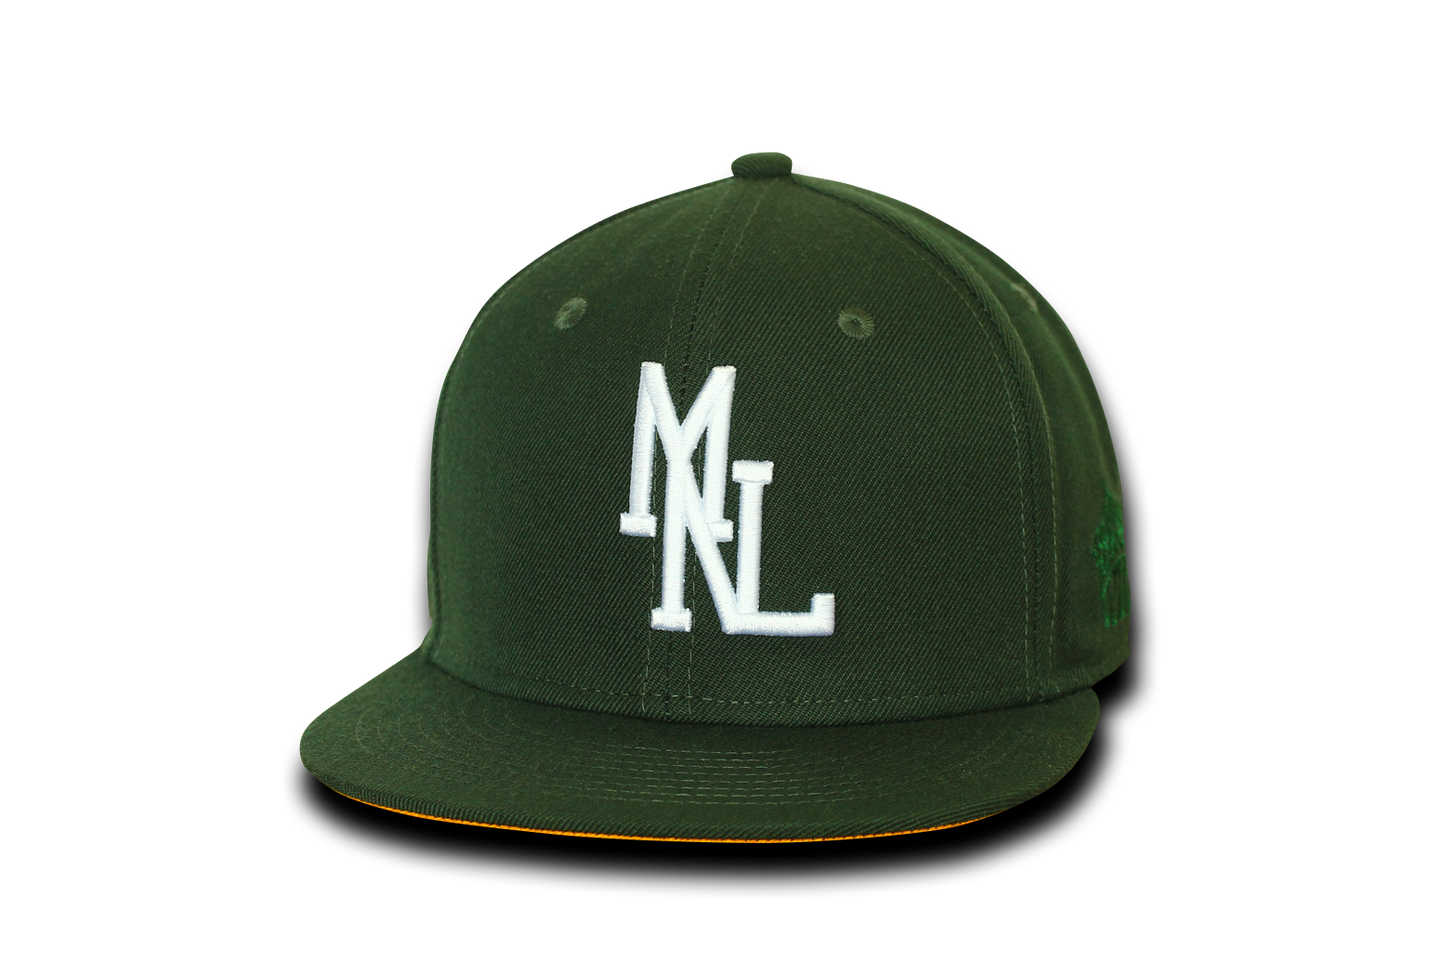 MNL A's S/B (Green)